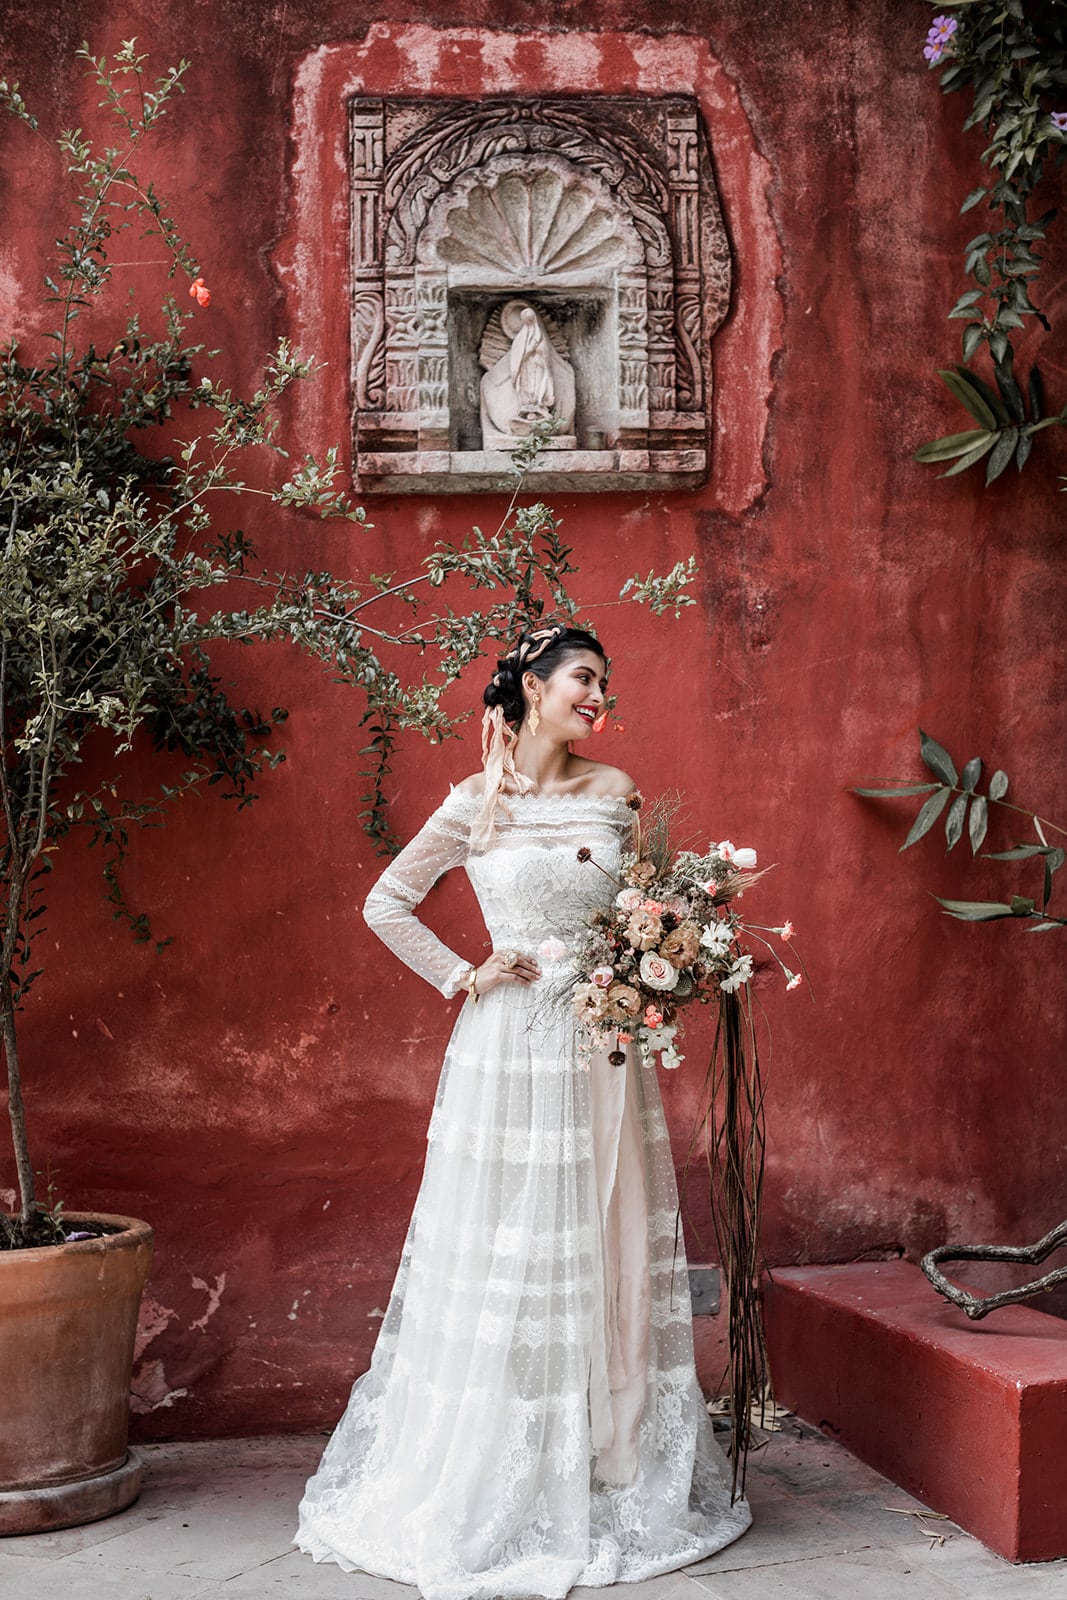 Bride stands San Miguel de Allende